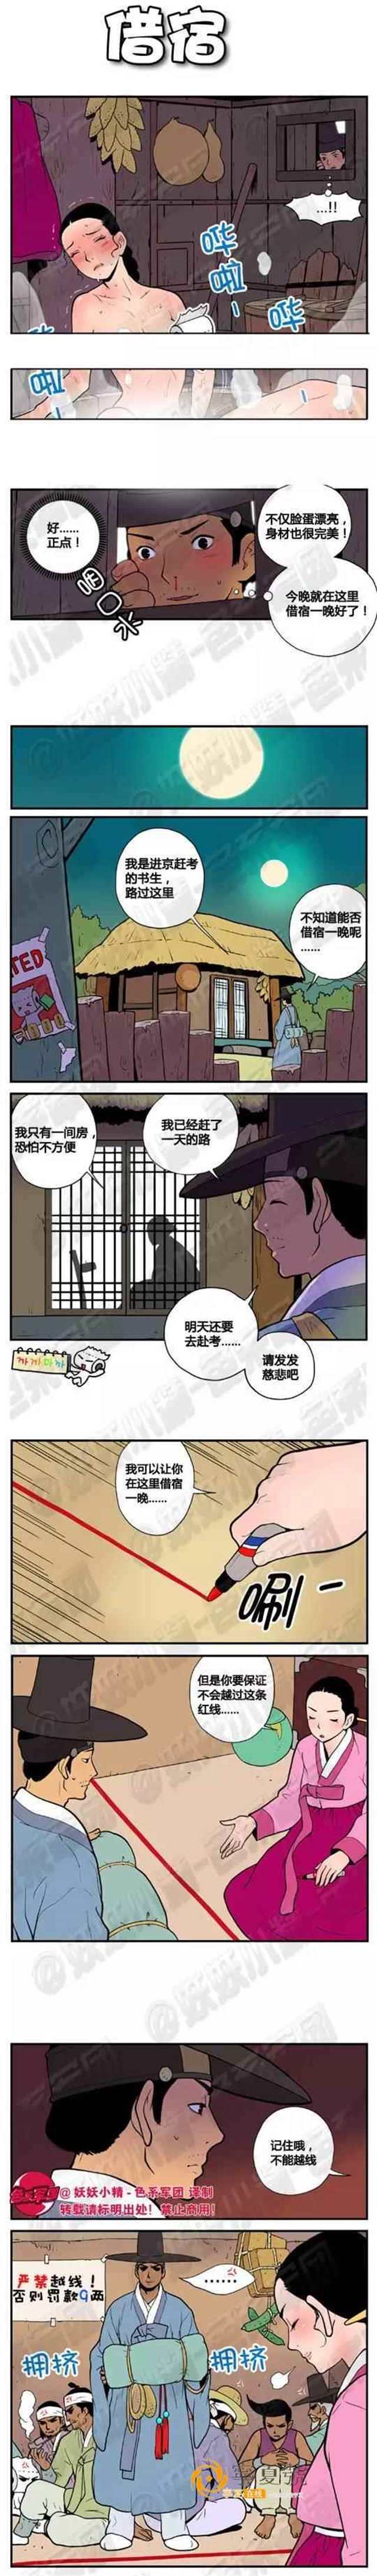 韩国小清新纯爱漫画——《温柔的嫂子》